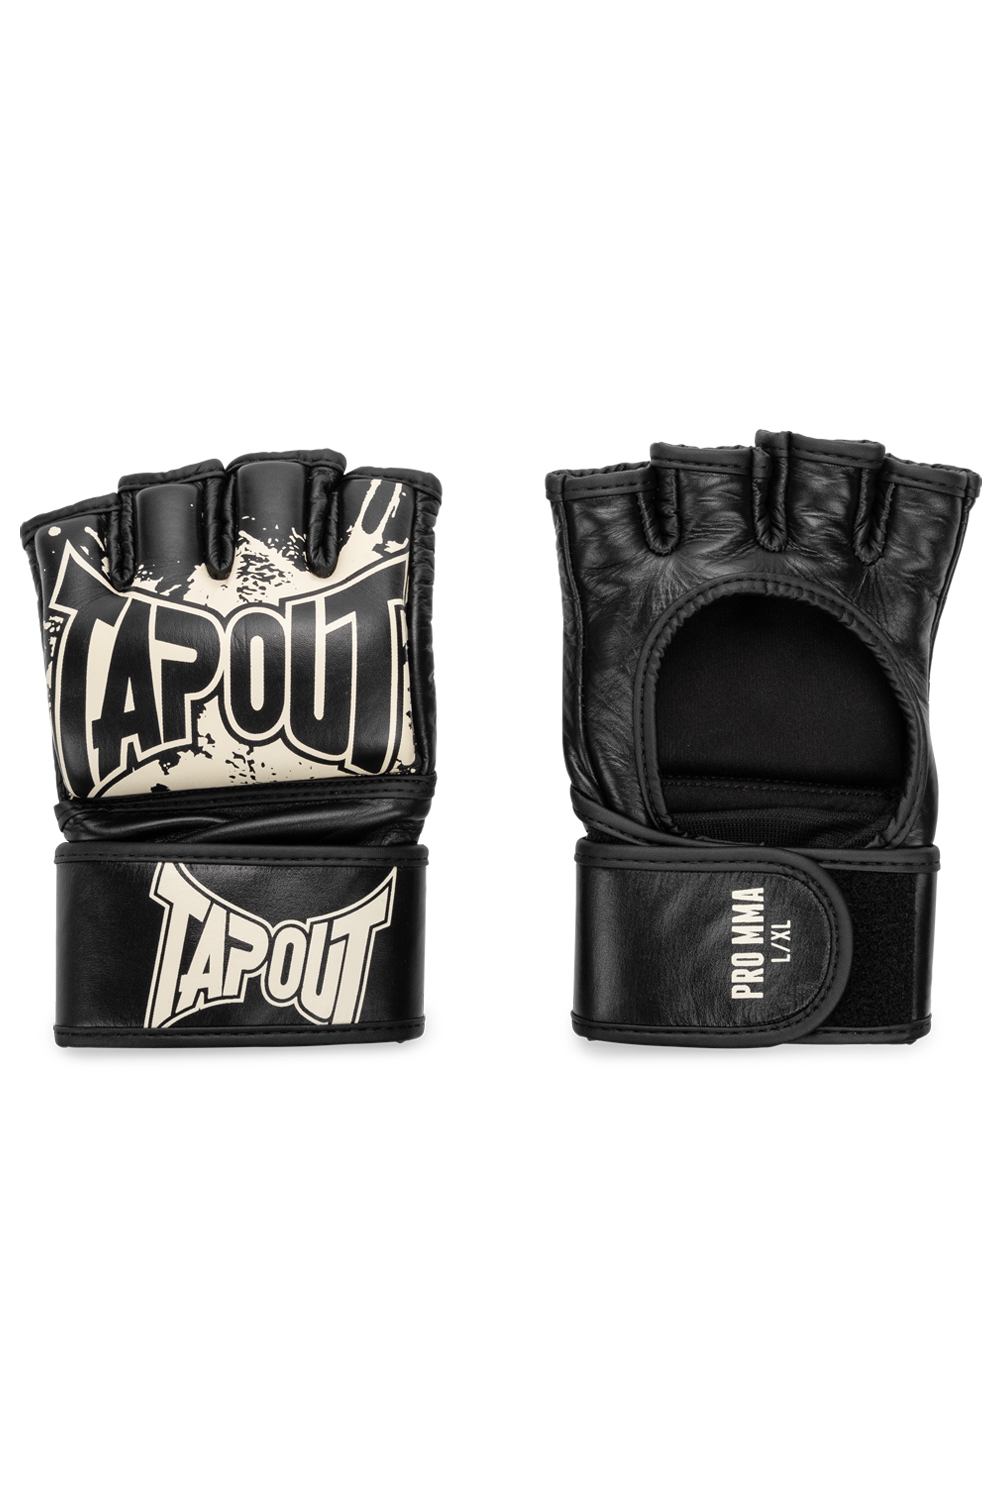 Tapout MMA Pro Fight Handschuhe Aus Leder (1 Paar)